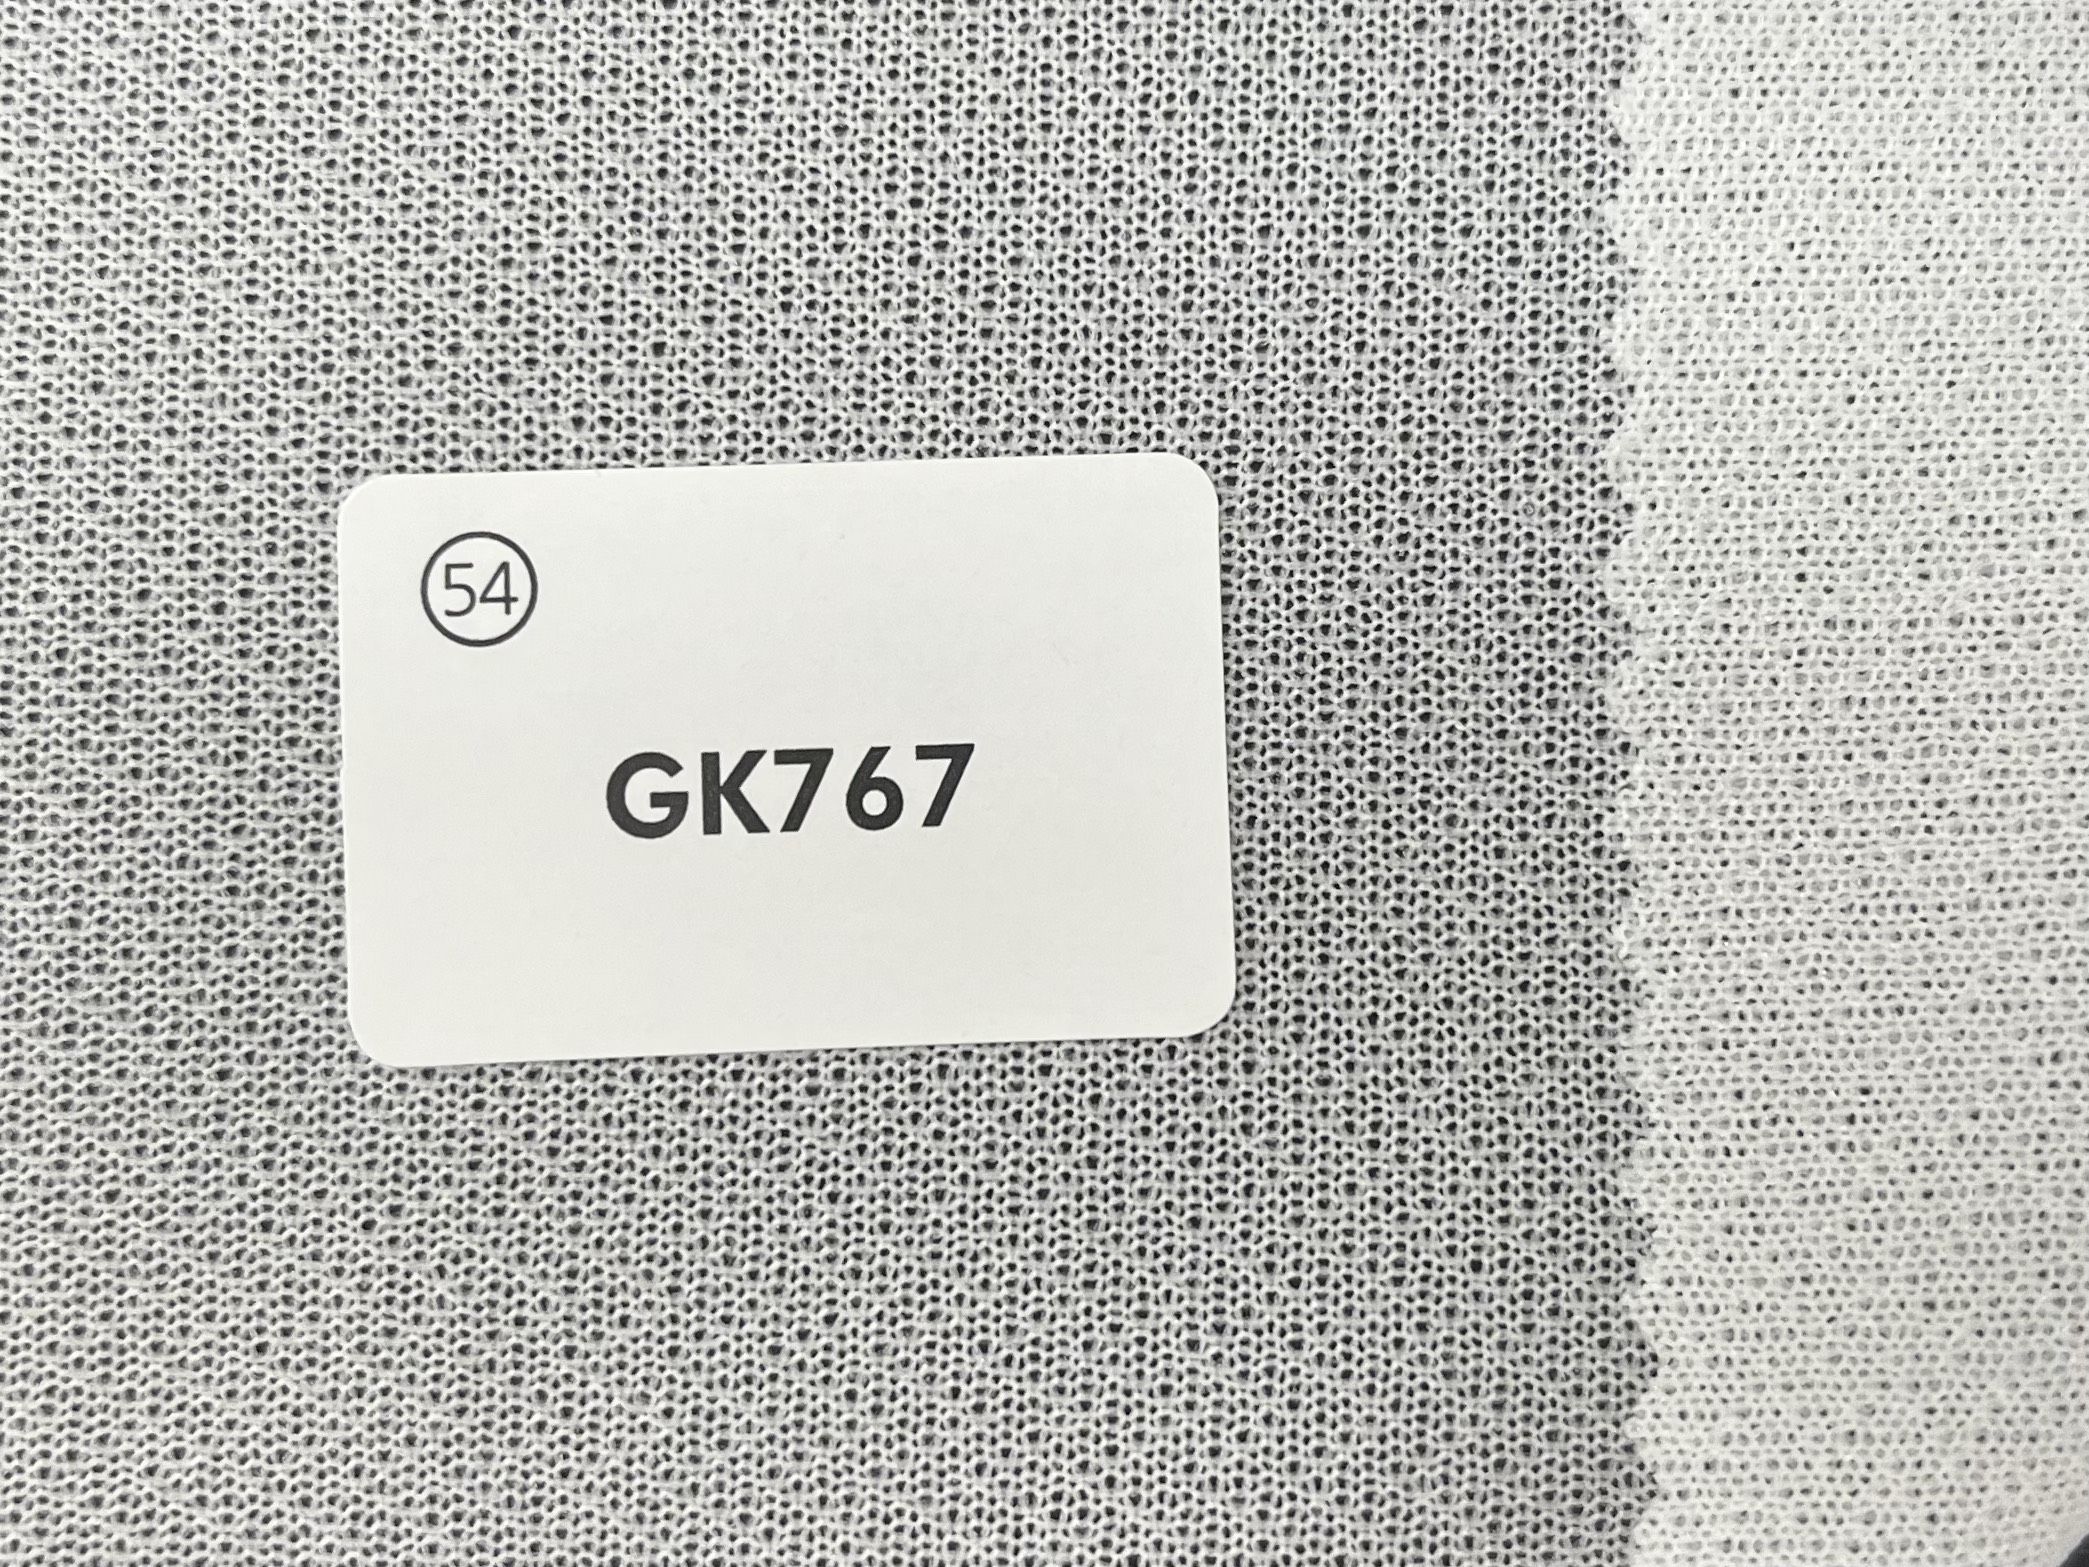 GK767